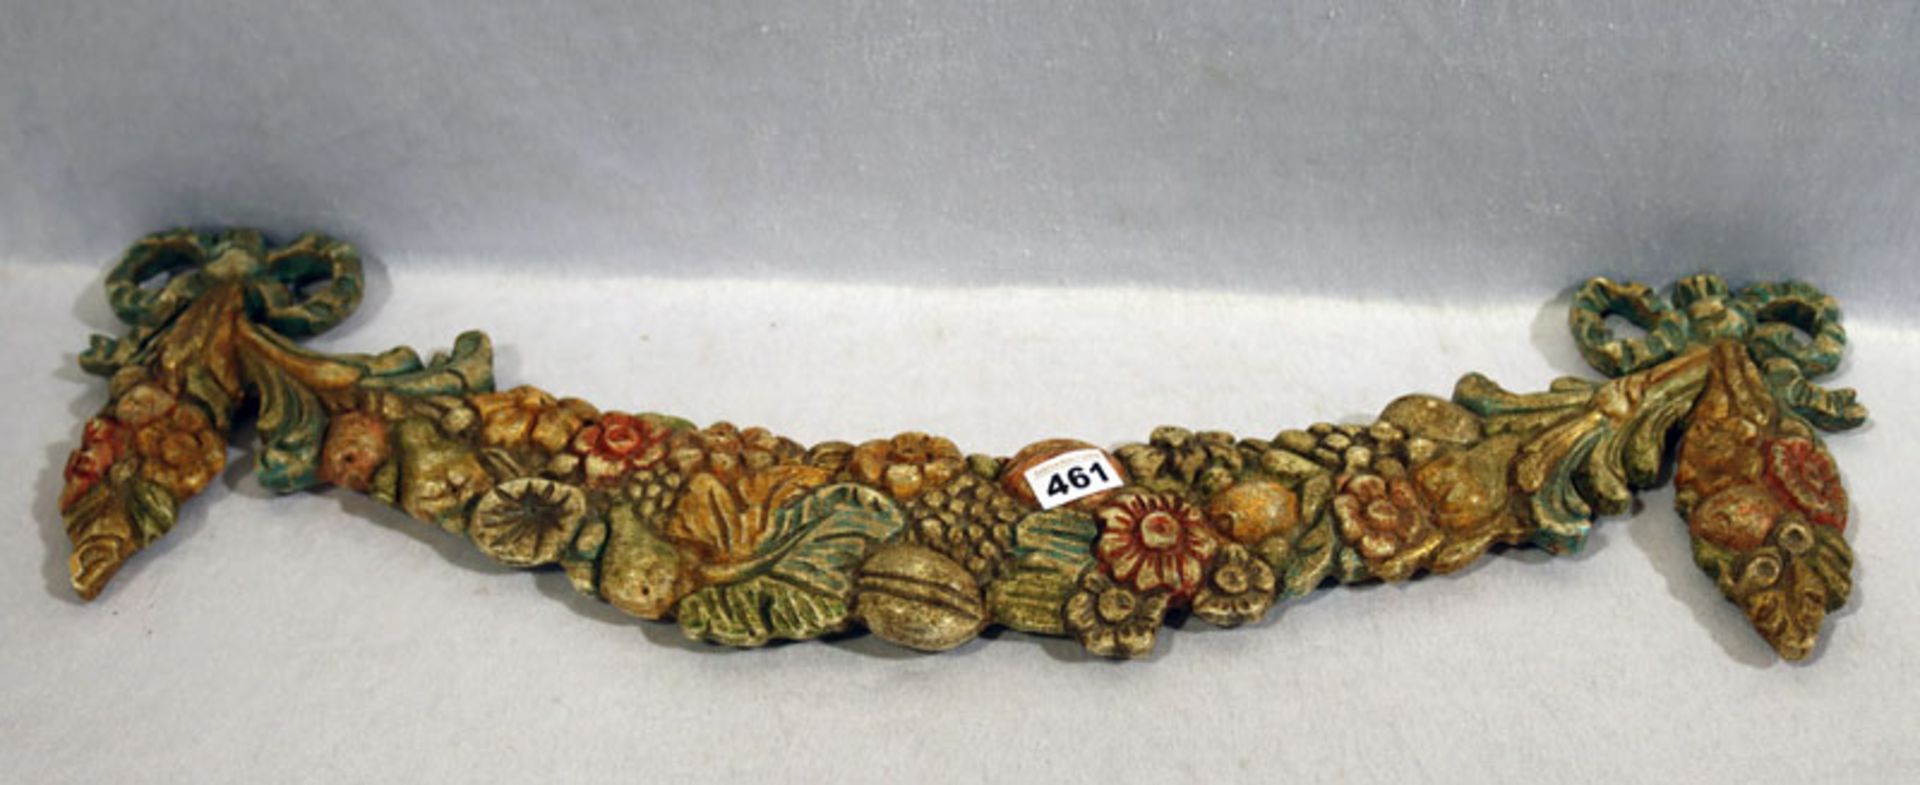 Holz Reliefbogen mit Blumen- und Früchte-Dekor, gefaßt, L 83 cm, H 22 cm, teils berieben